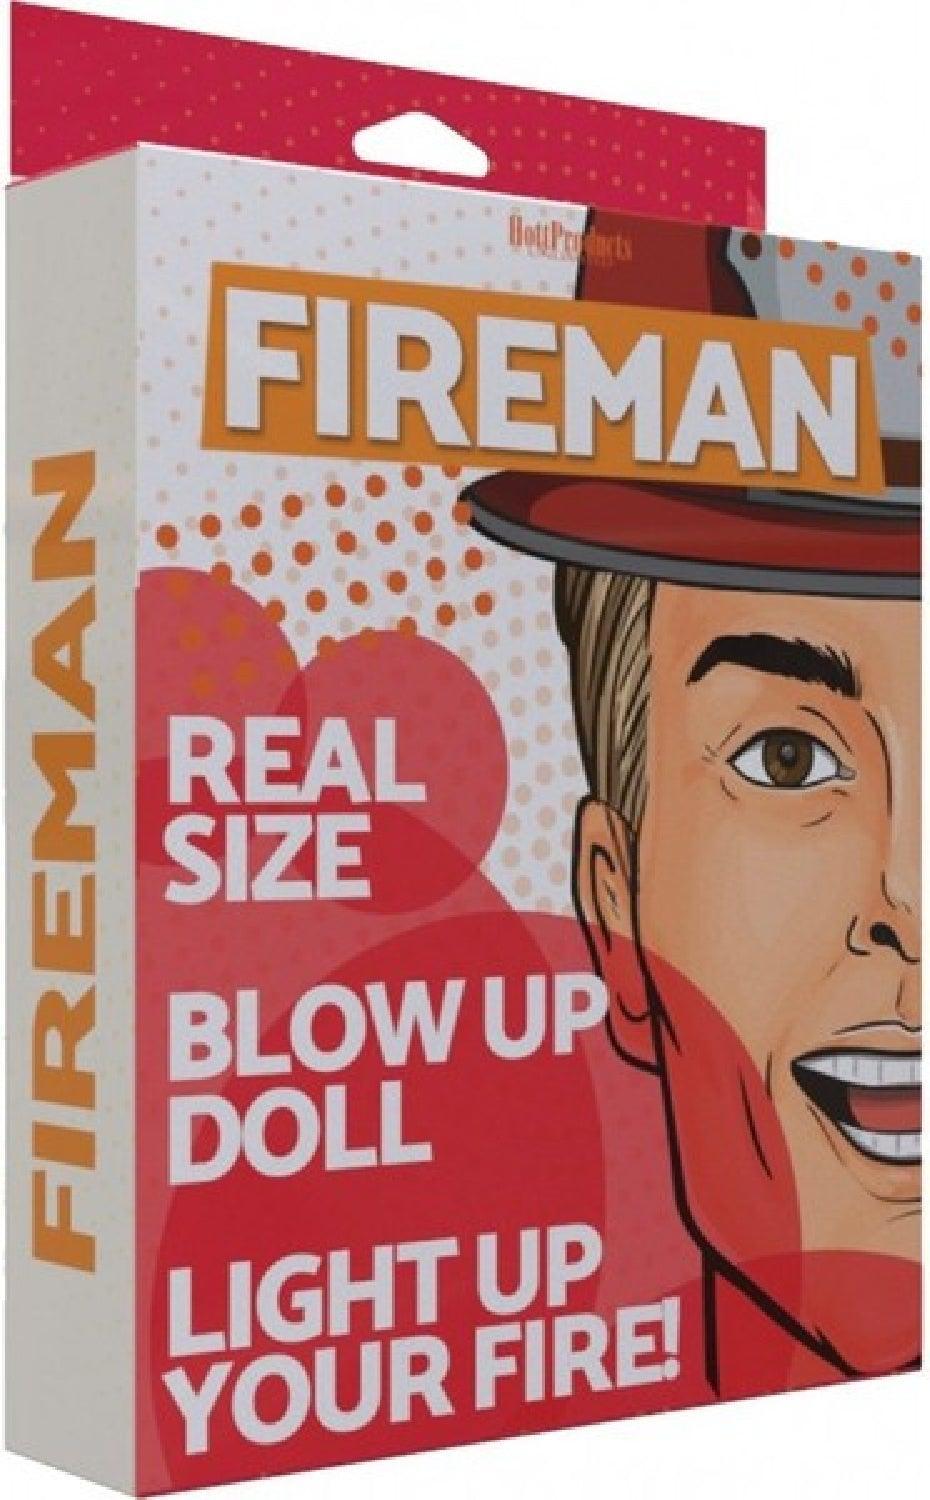 Fireman Inflatable Doll - Take A Peek